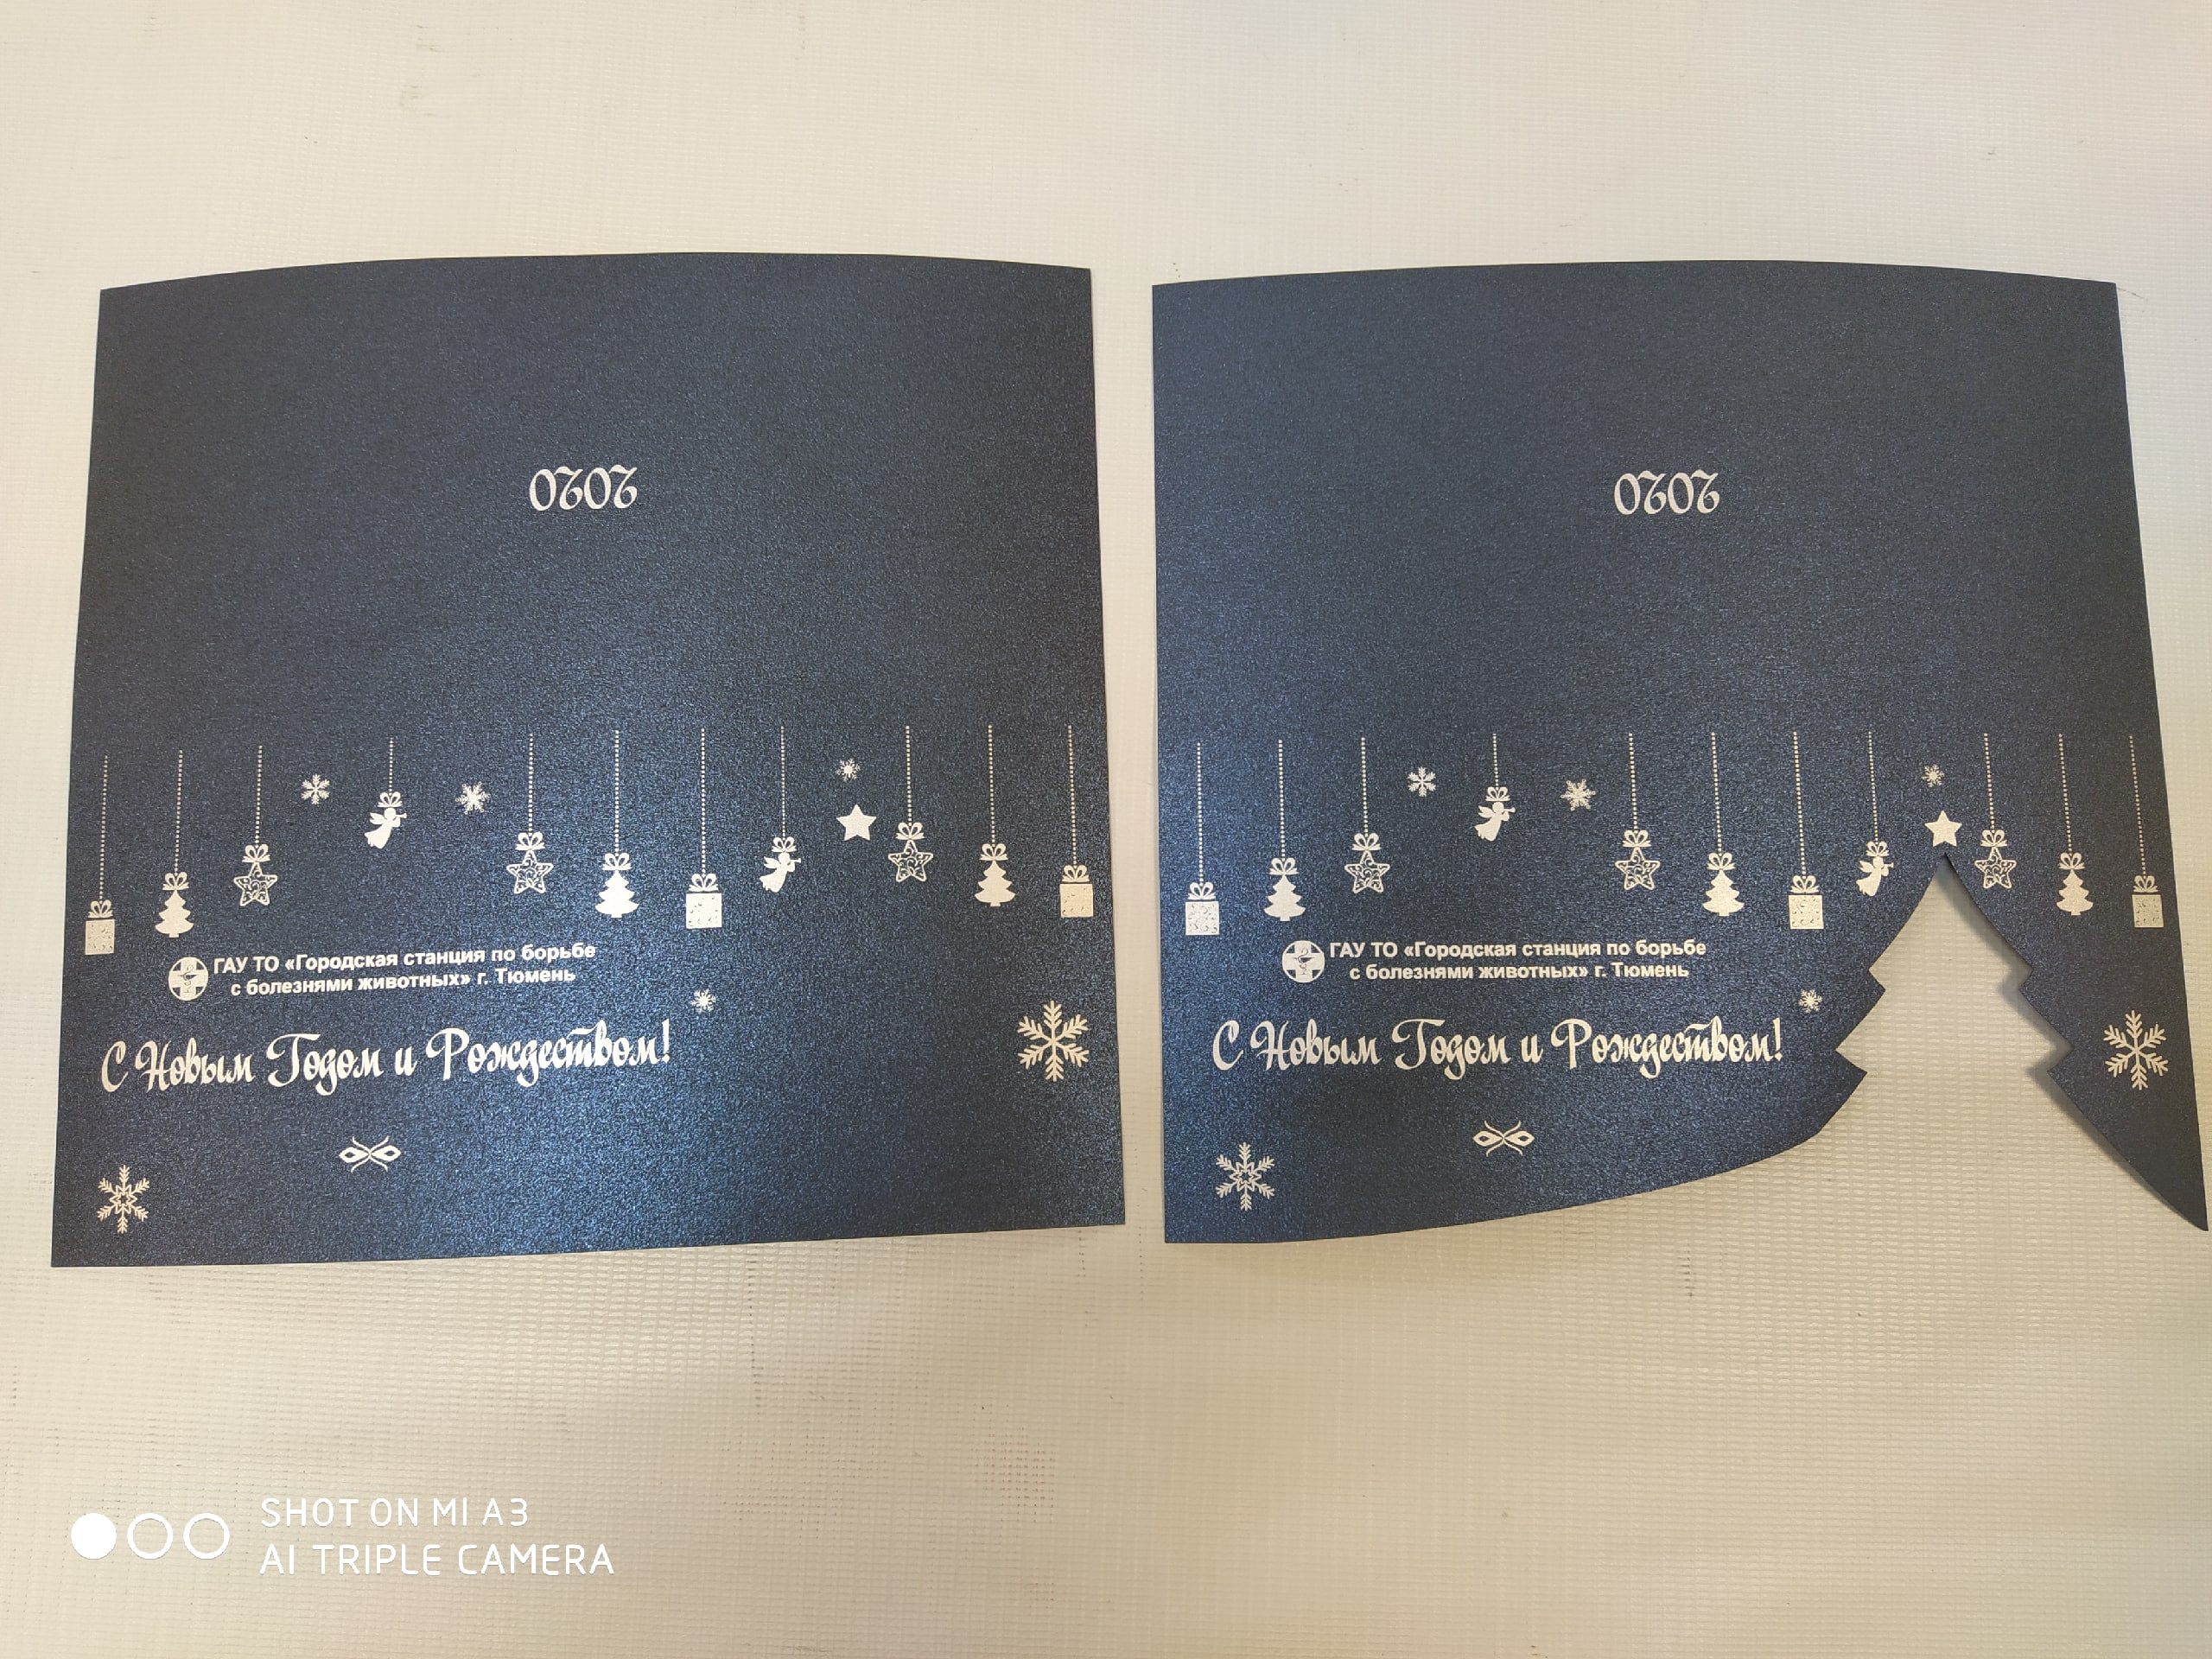 Lasergeschnittene benutzerdefinierte Postkarte